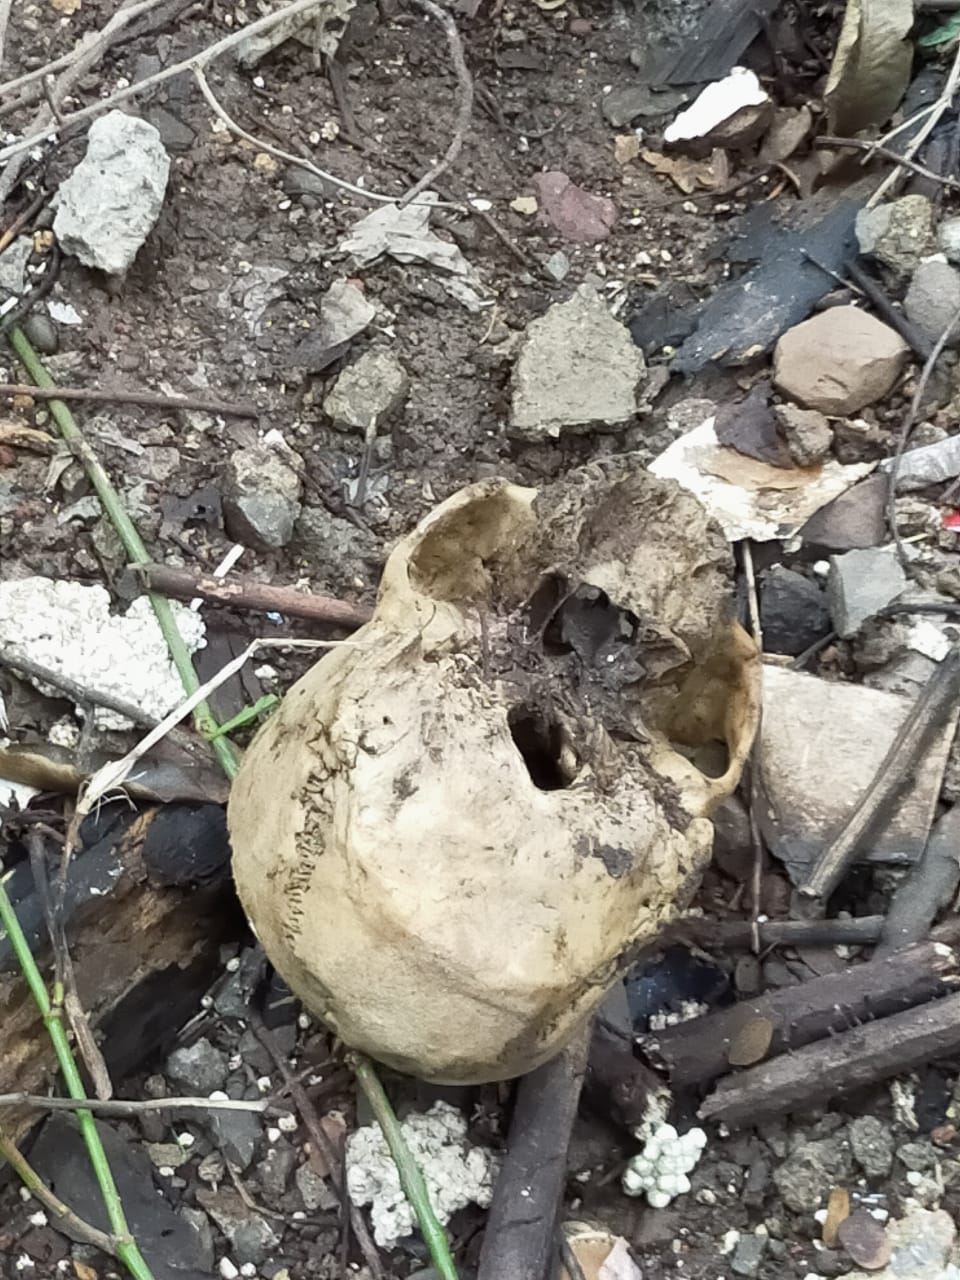 Skeleton found